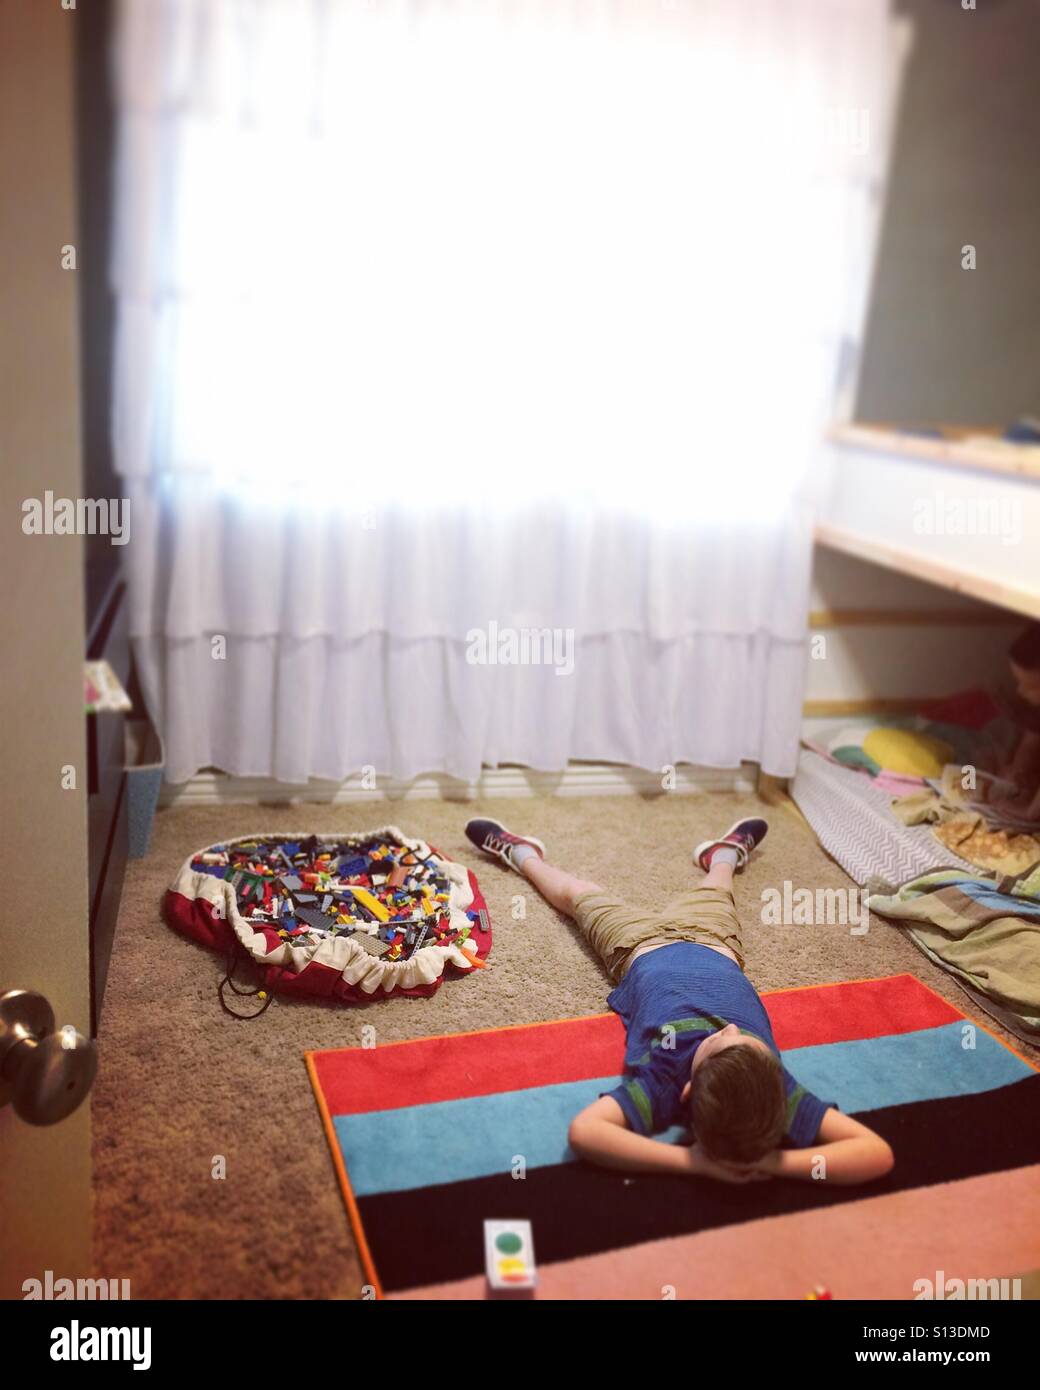 Junge liegend auf einem bunten Teppich im Schlafzimmer Stockfoto